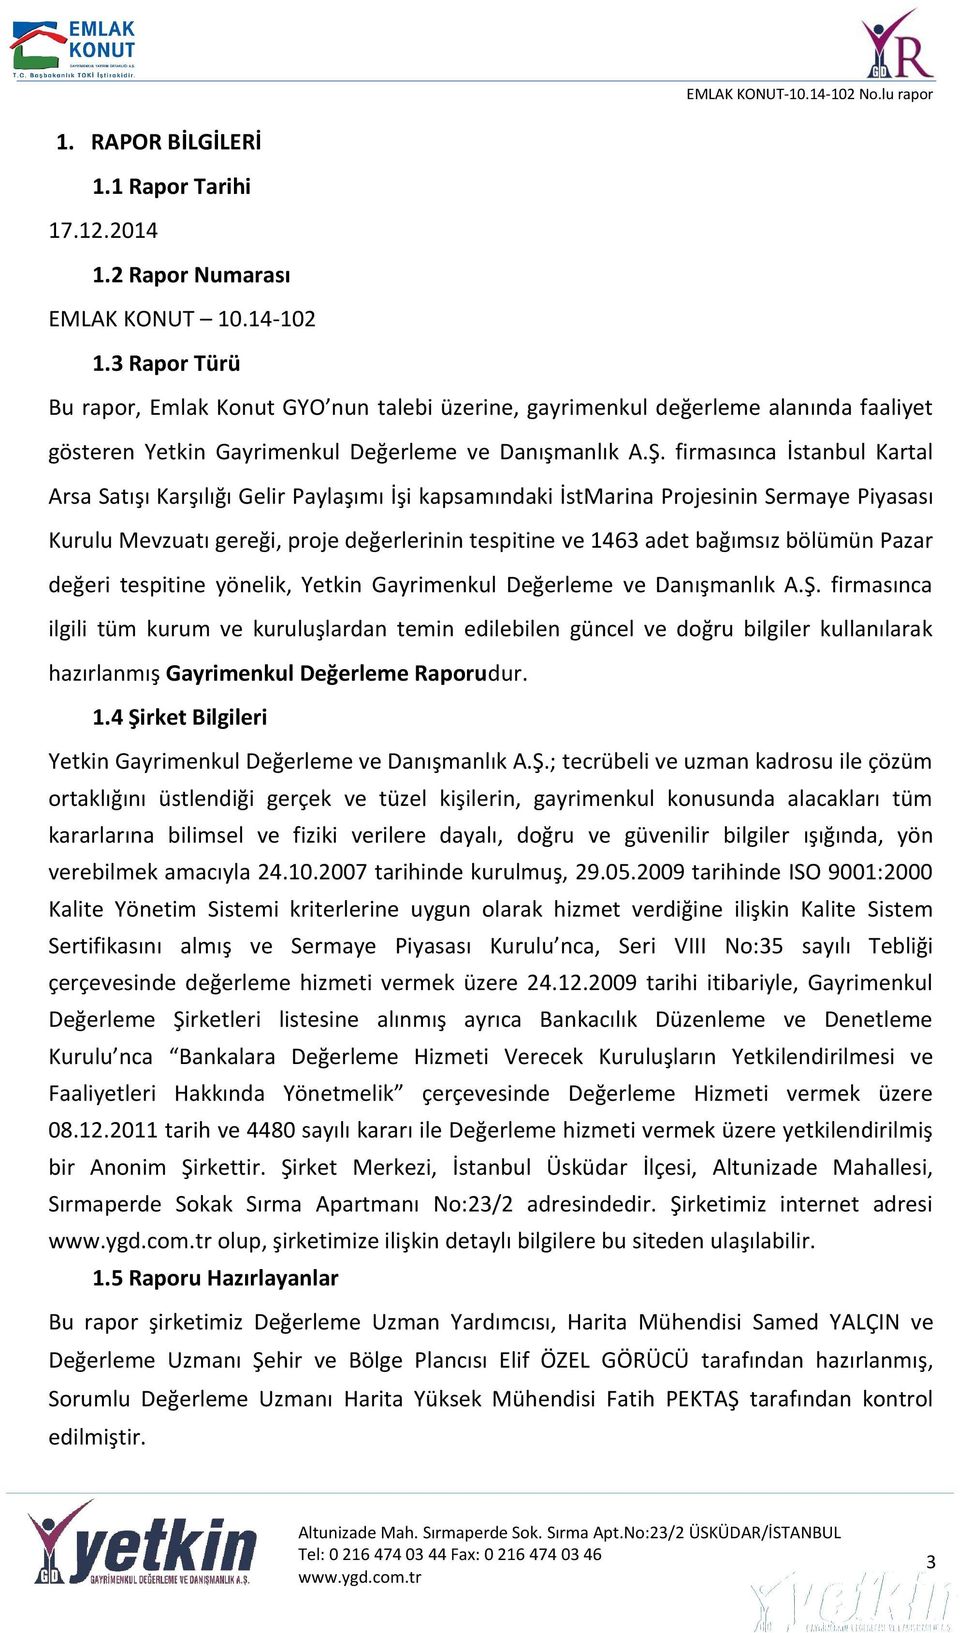 firmasınca İstanbul Kartal Arsa Satışı Karşılığı Gelir Paylaşımı İşi kapsamındaki İstMarina Projesinin Sermaye Piyasası Kurulu Mevzuatı gereği, proje değerlerinin tespitine ve 1463 adet bağımsız